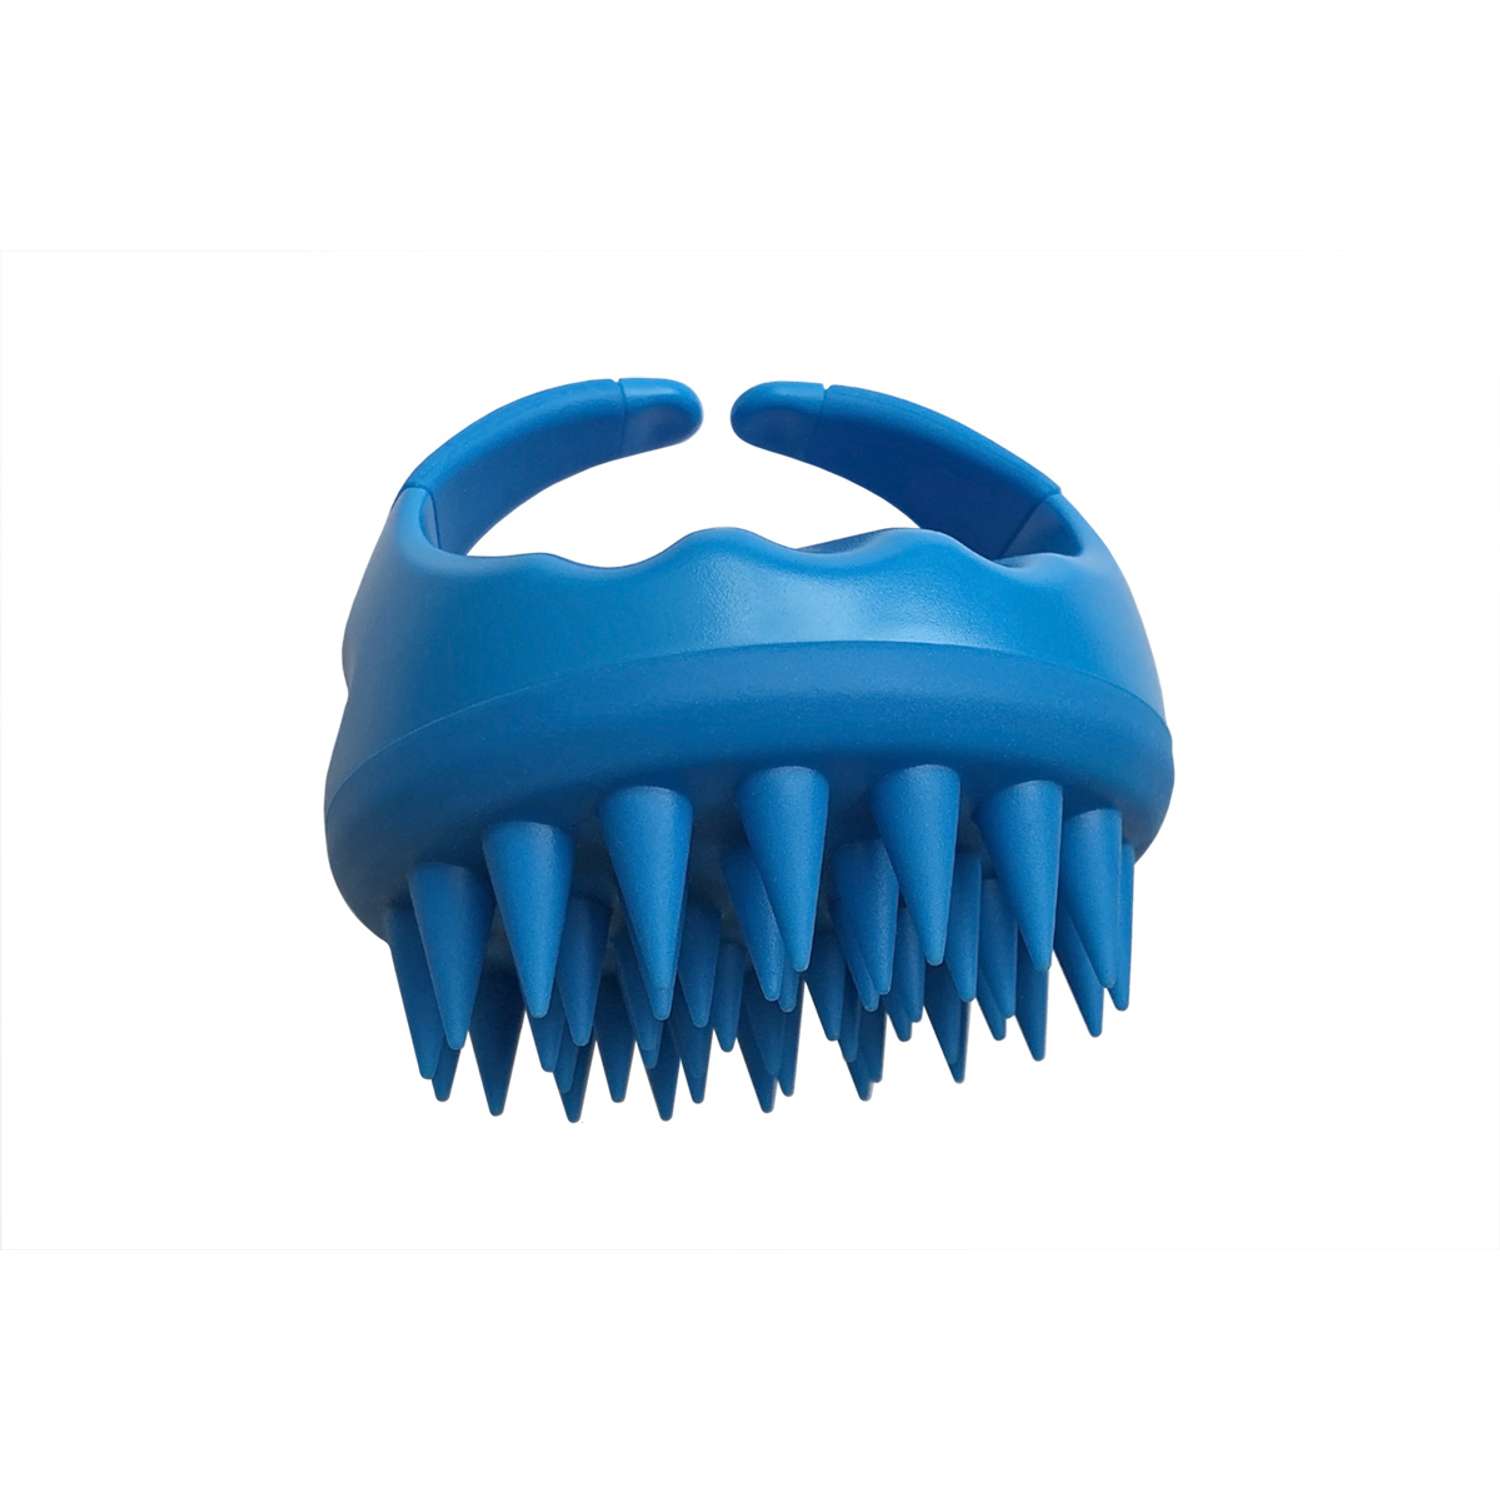 Щетка для мытья волос и головы Clarette с силиконовыми зубьями - фото 1